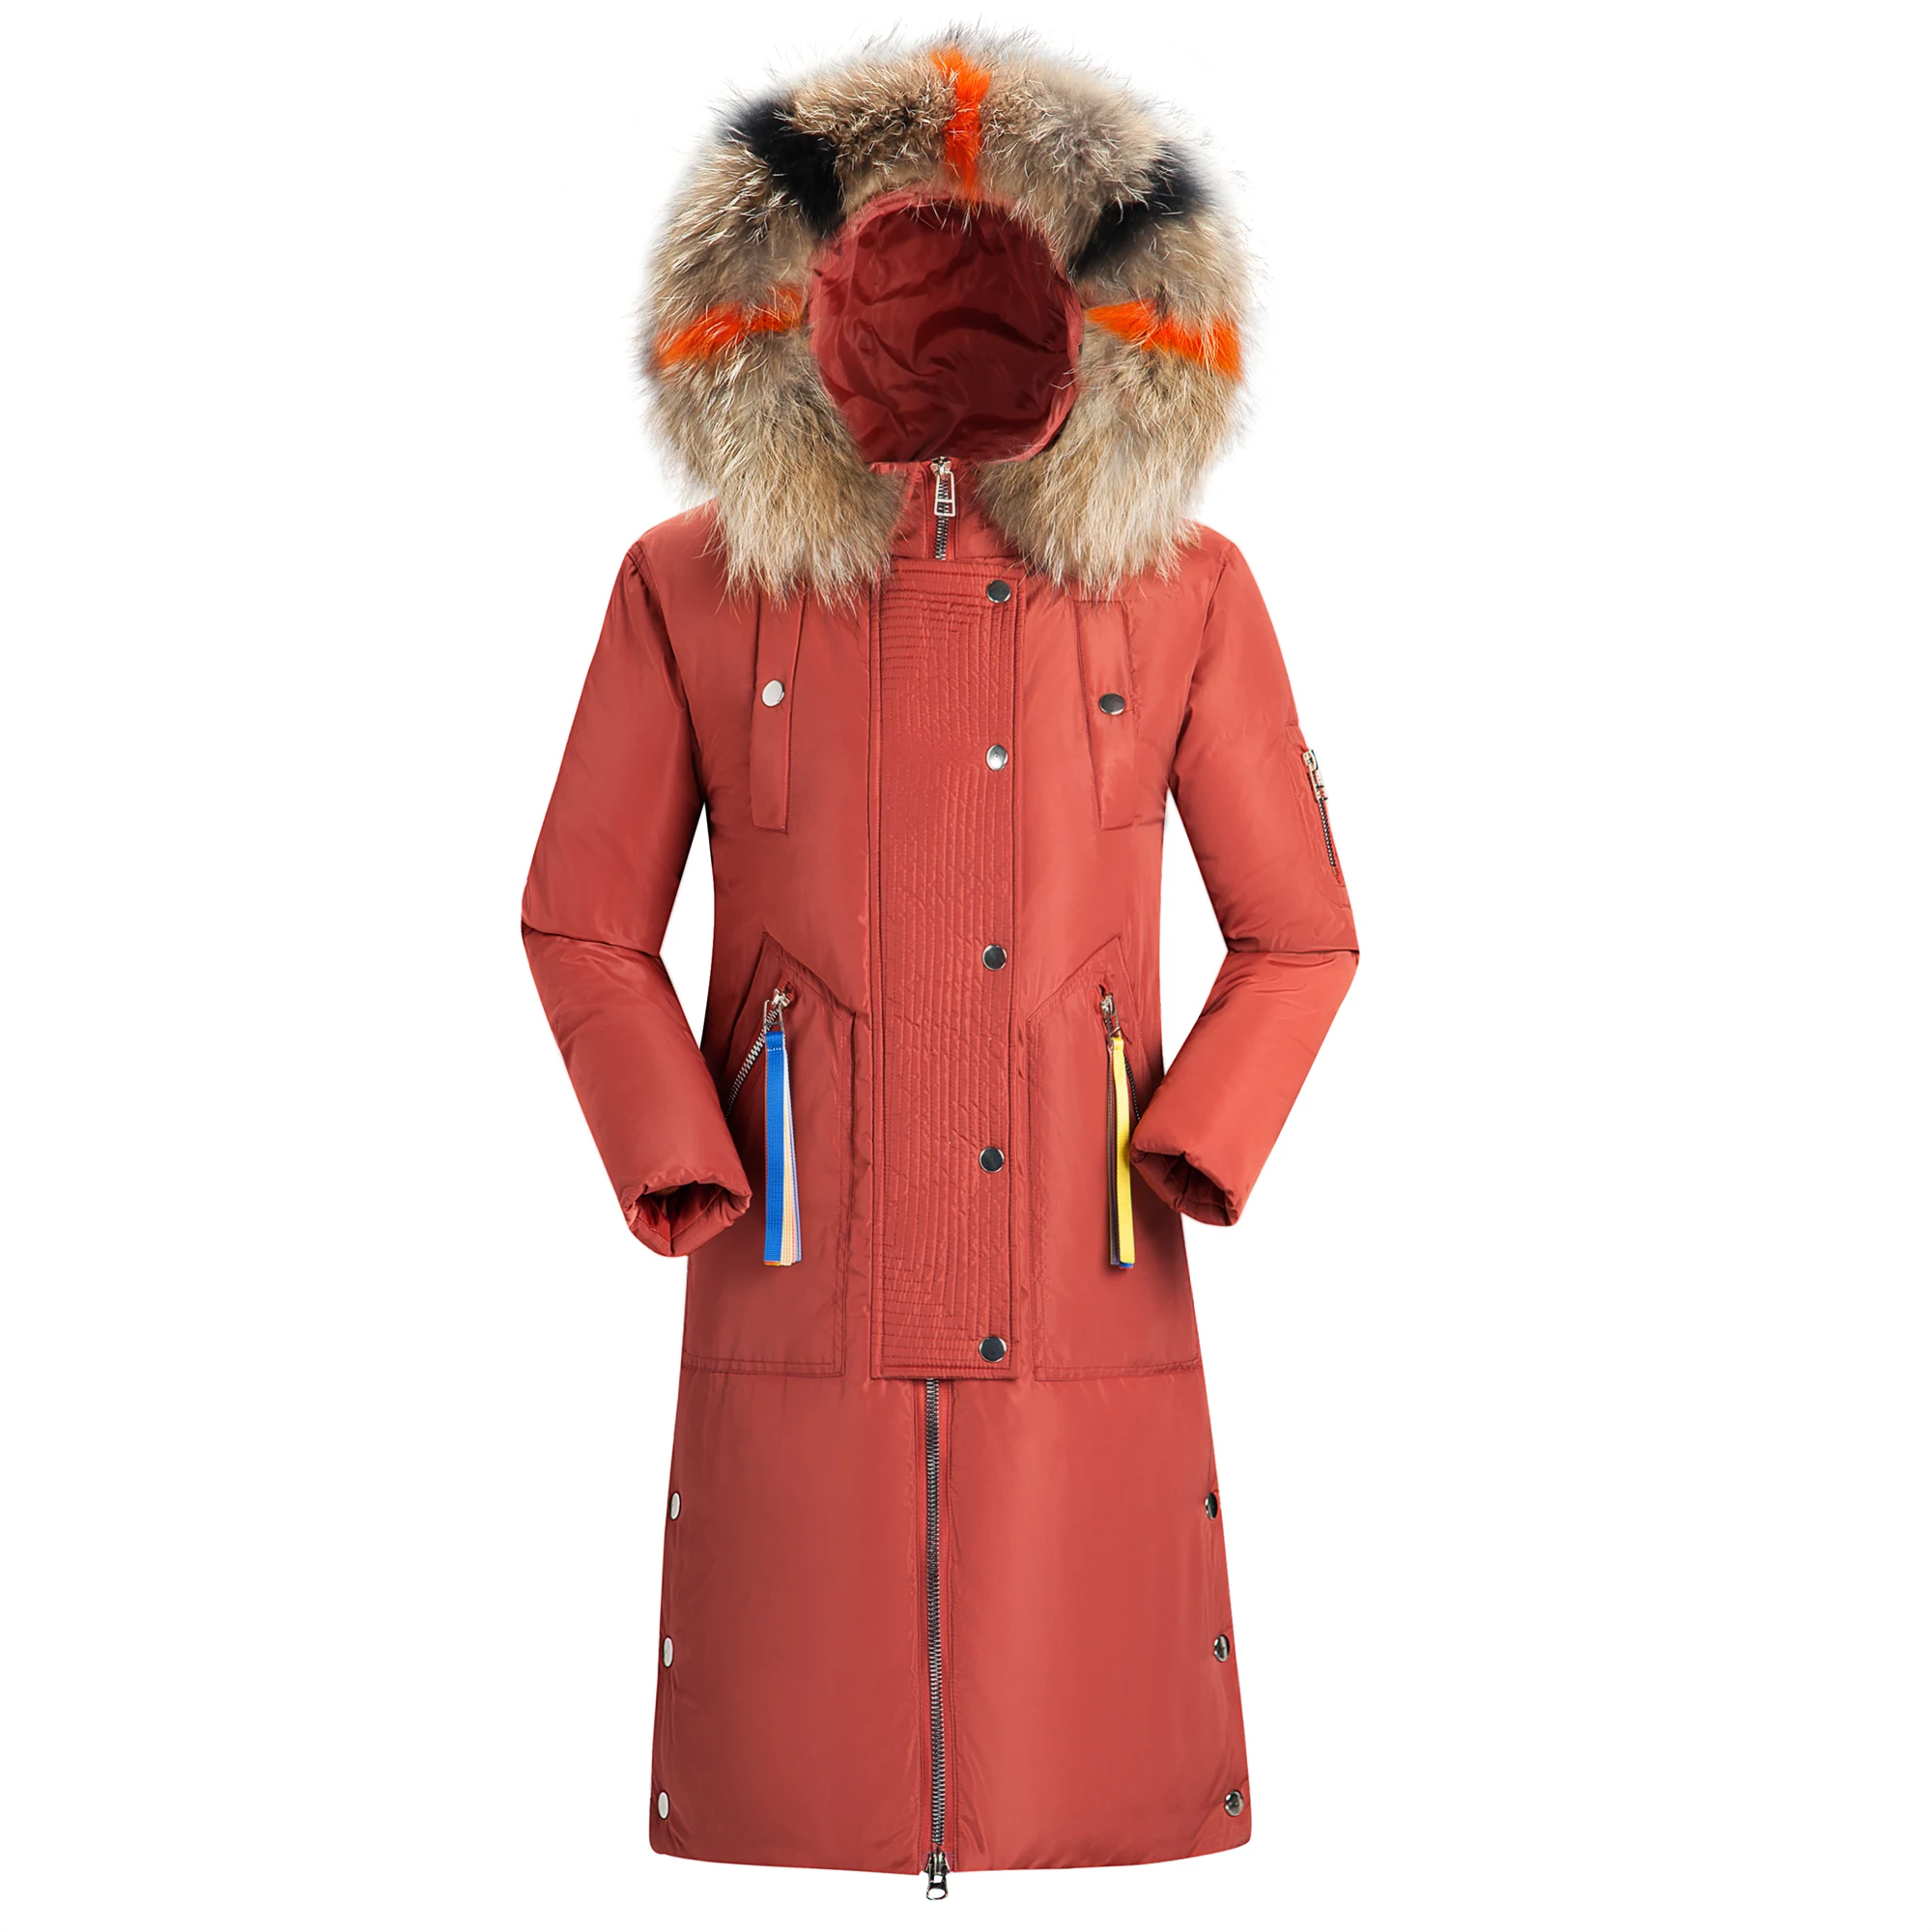 2018 Новинка зимы Для женщин теплая верхняя одежда с капюшоном с меховым воротником куртка на молнии модные хлопковые пальто леди длинный